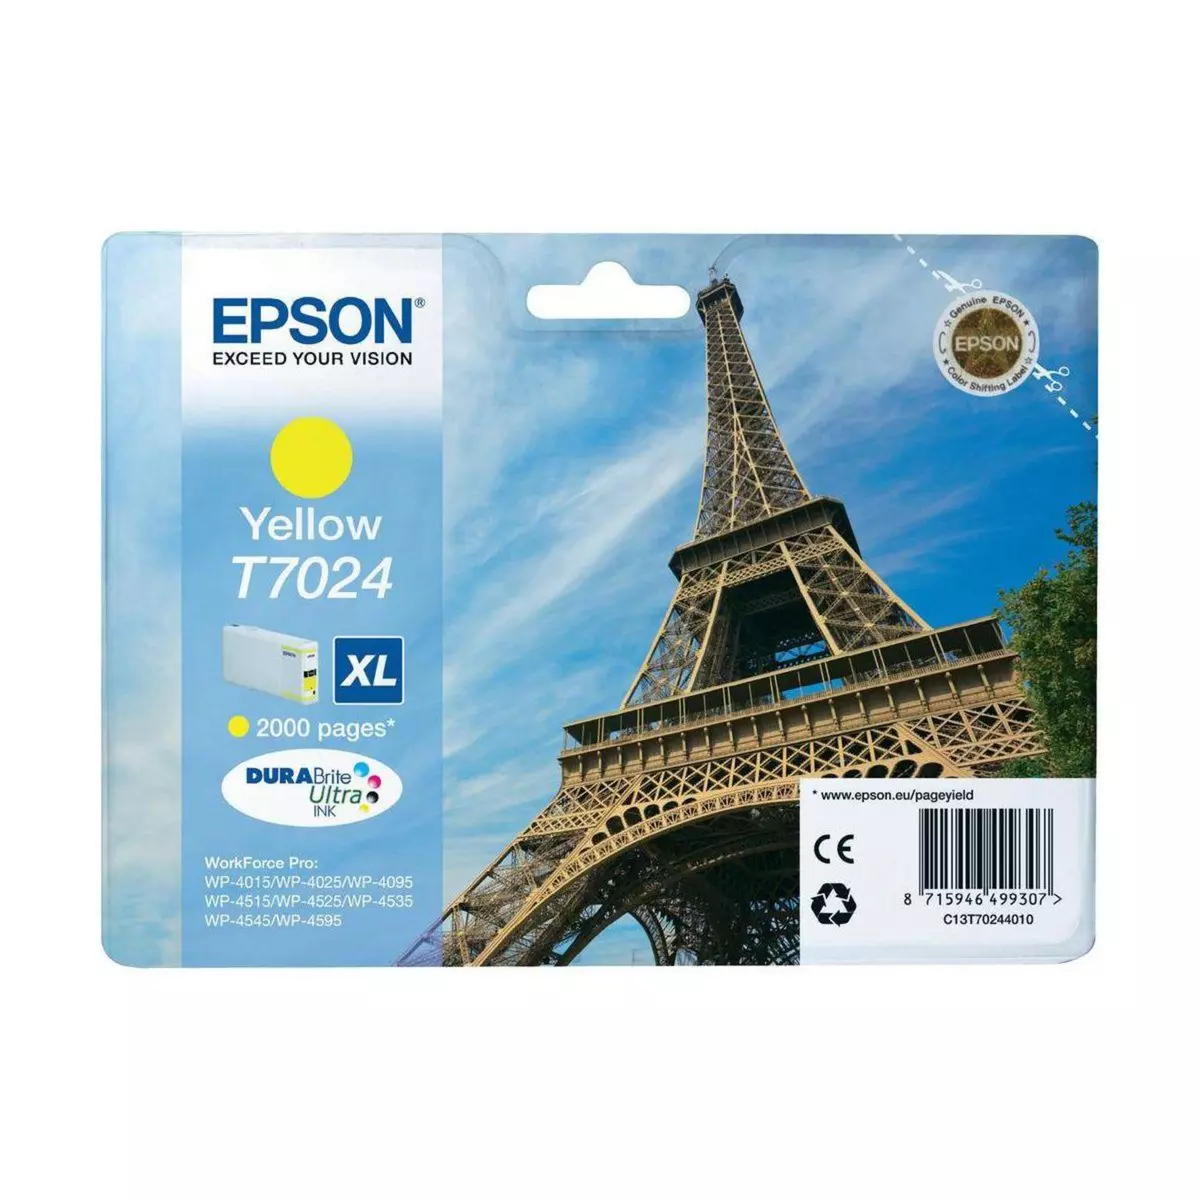 Epson Cartouche d'encre T7024 XL Jaune Série Tour Eiffel